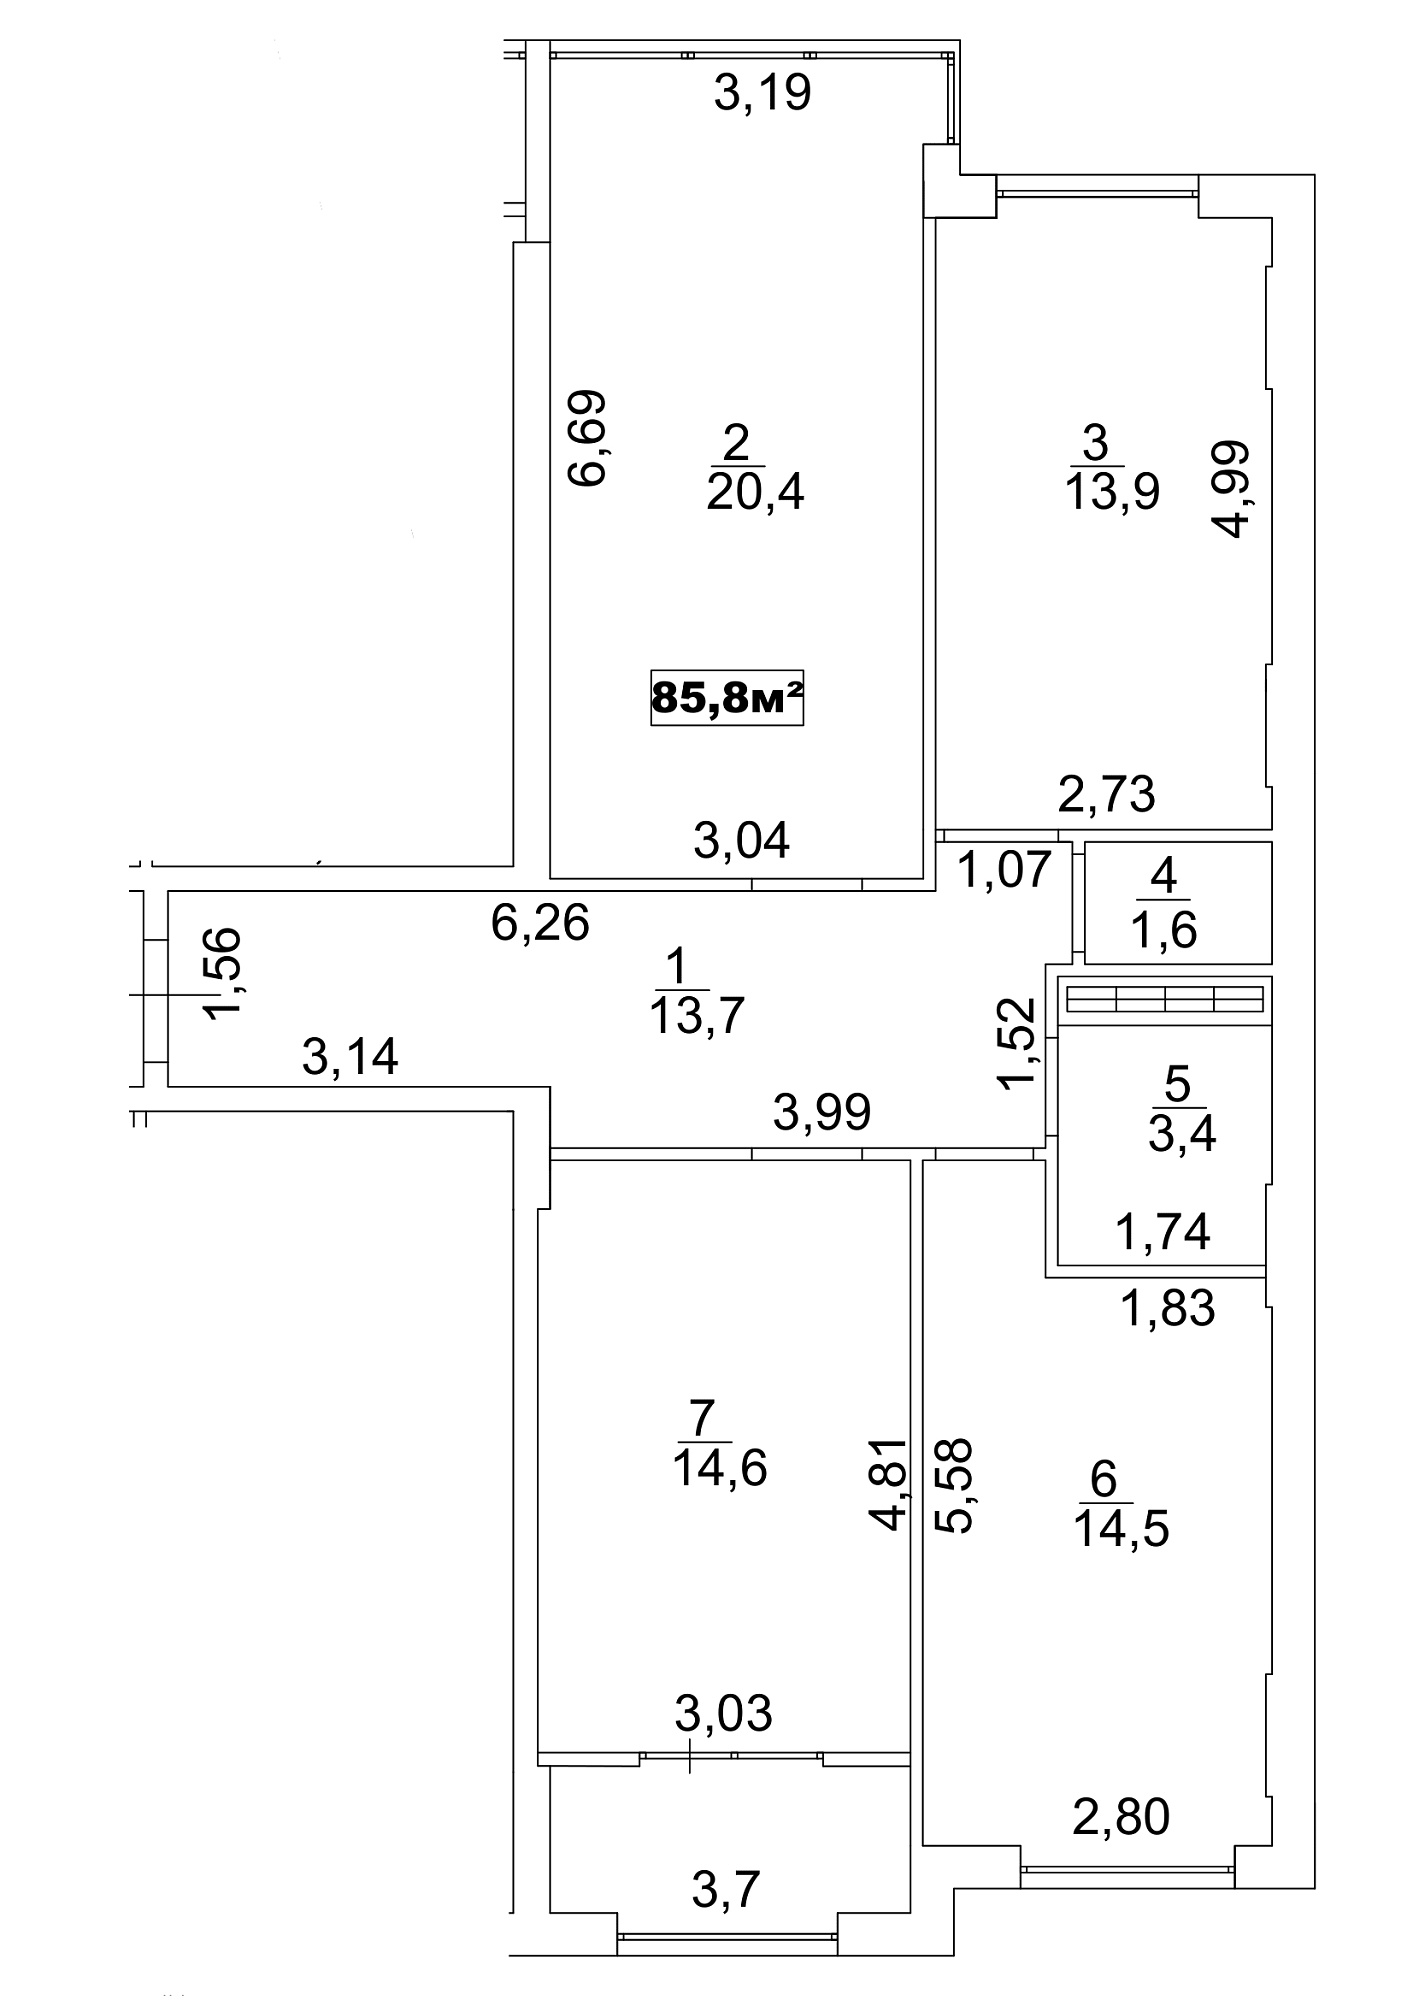 Планировка 3-к квартира площей 85.8м2, AB-13-10/00085.